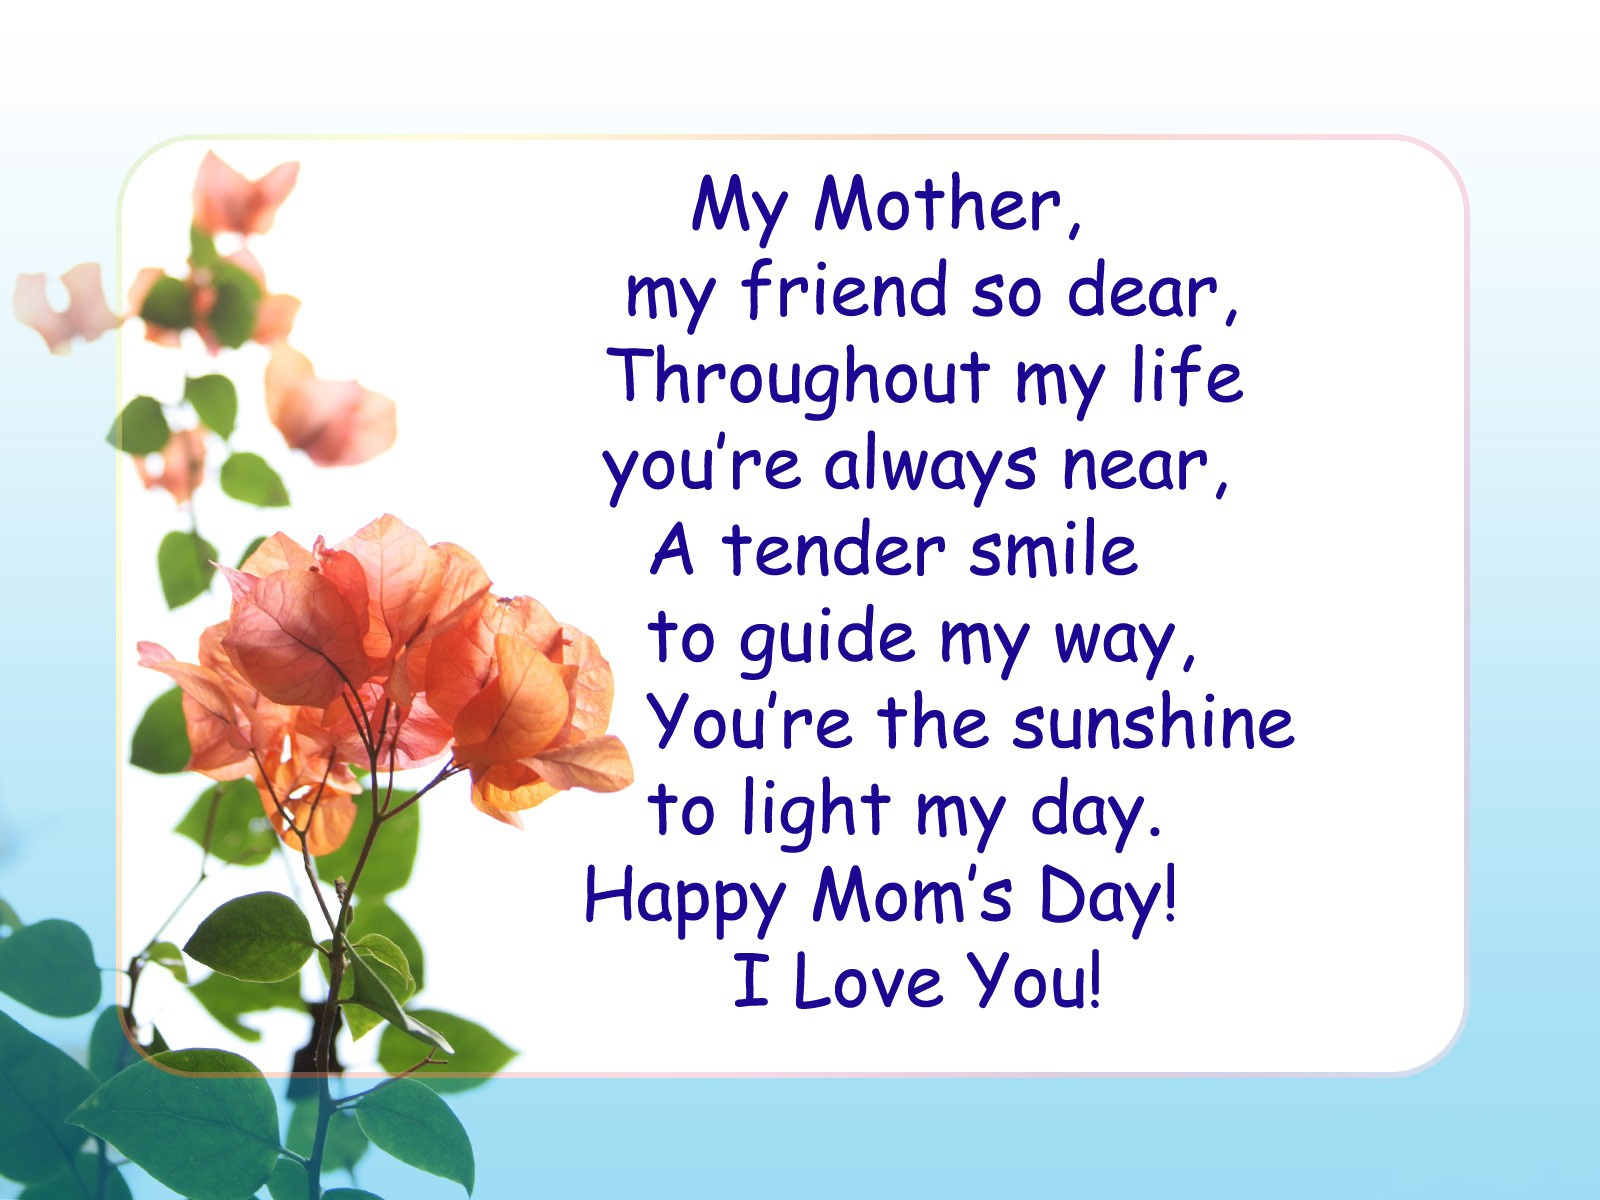 Английский my mother is. Стихи на английском. Стих про маму на английском языке. Поздравление для мамы на английском языке. Стих на день матери на английском.